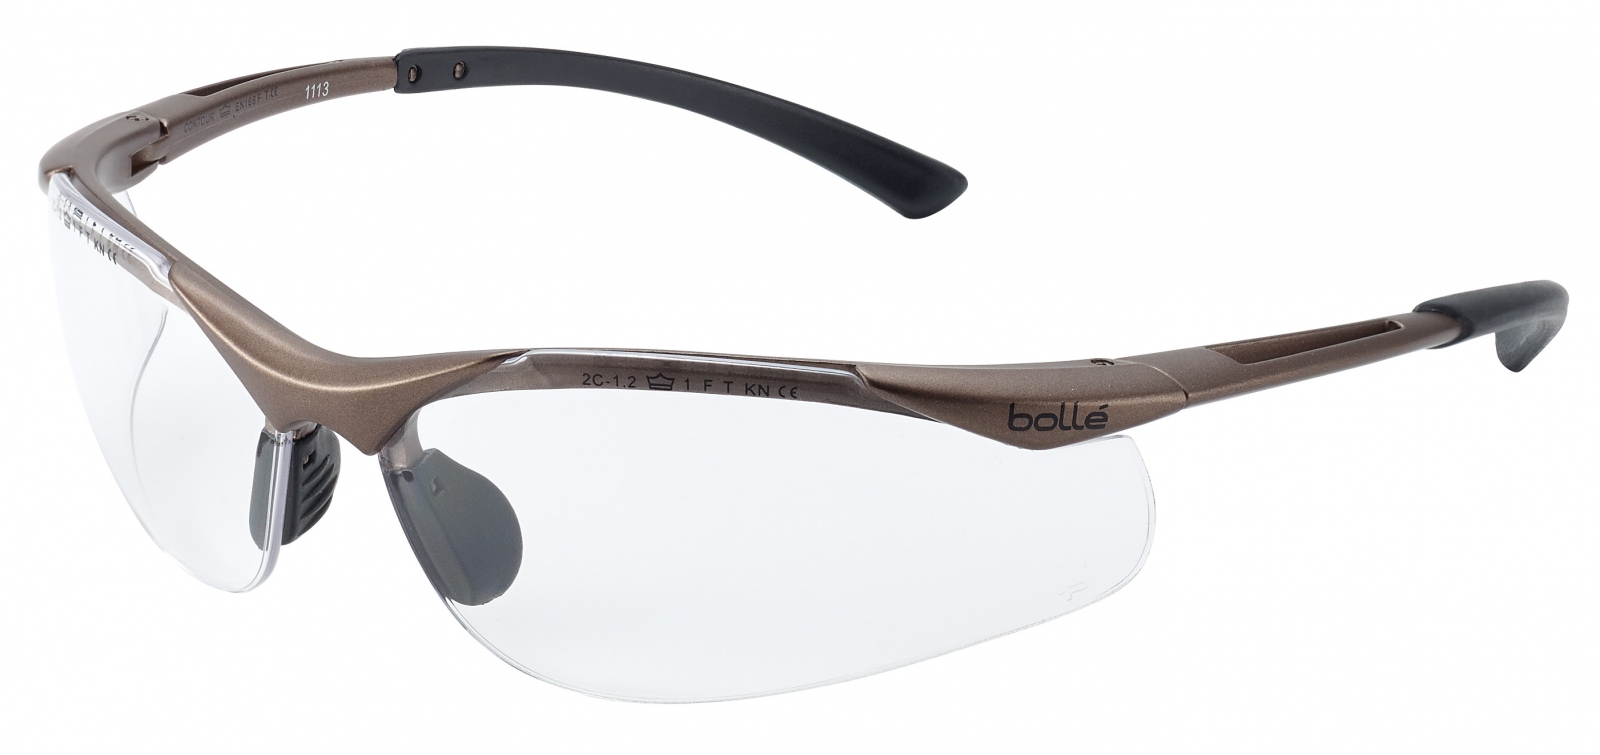 pics/Bollé/CONTOUR CONTPSI/bolle-contour-contpsi-work-safety-glasses-antistatic-clear-en166-front.jpg